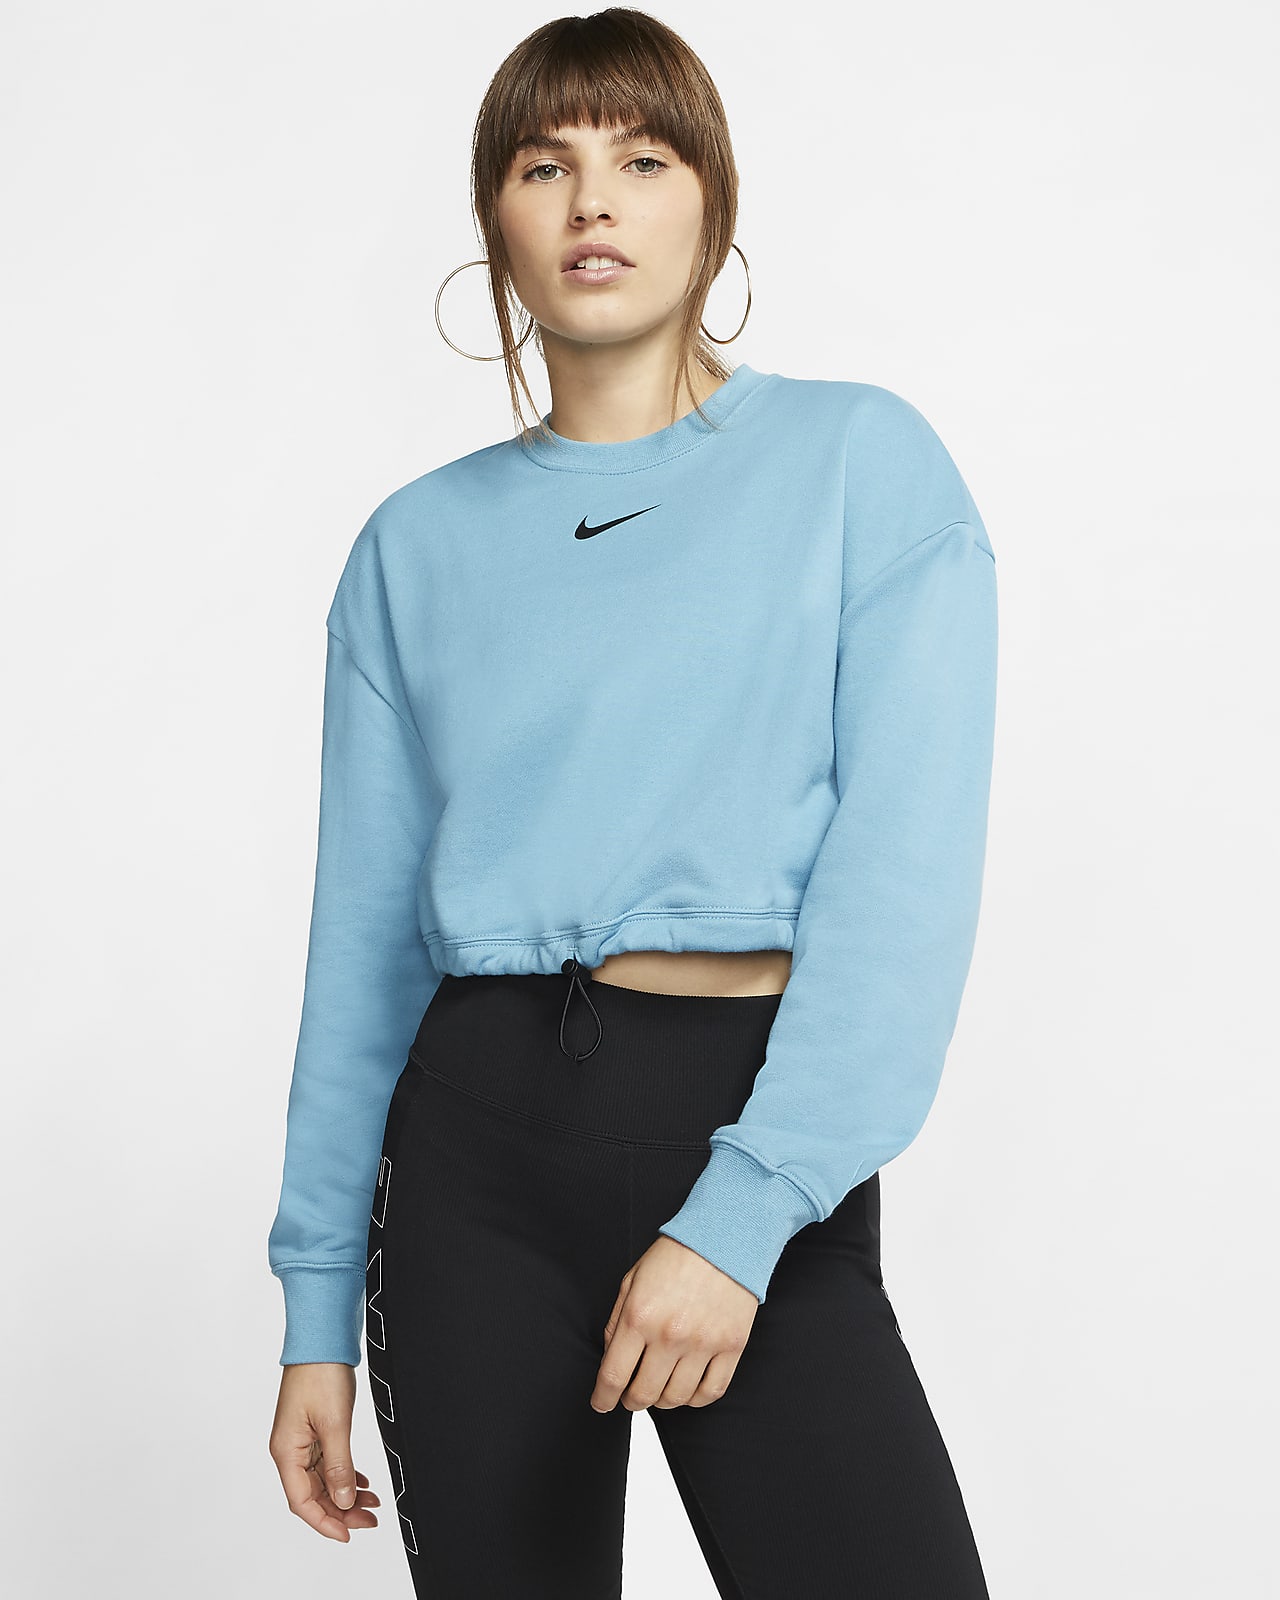 Nike Sportswear survetement femme noir 2020